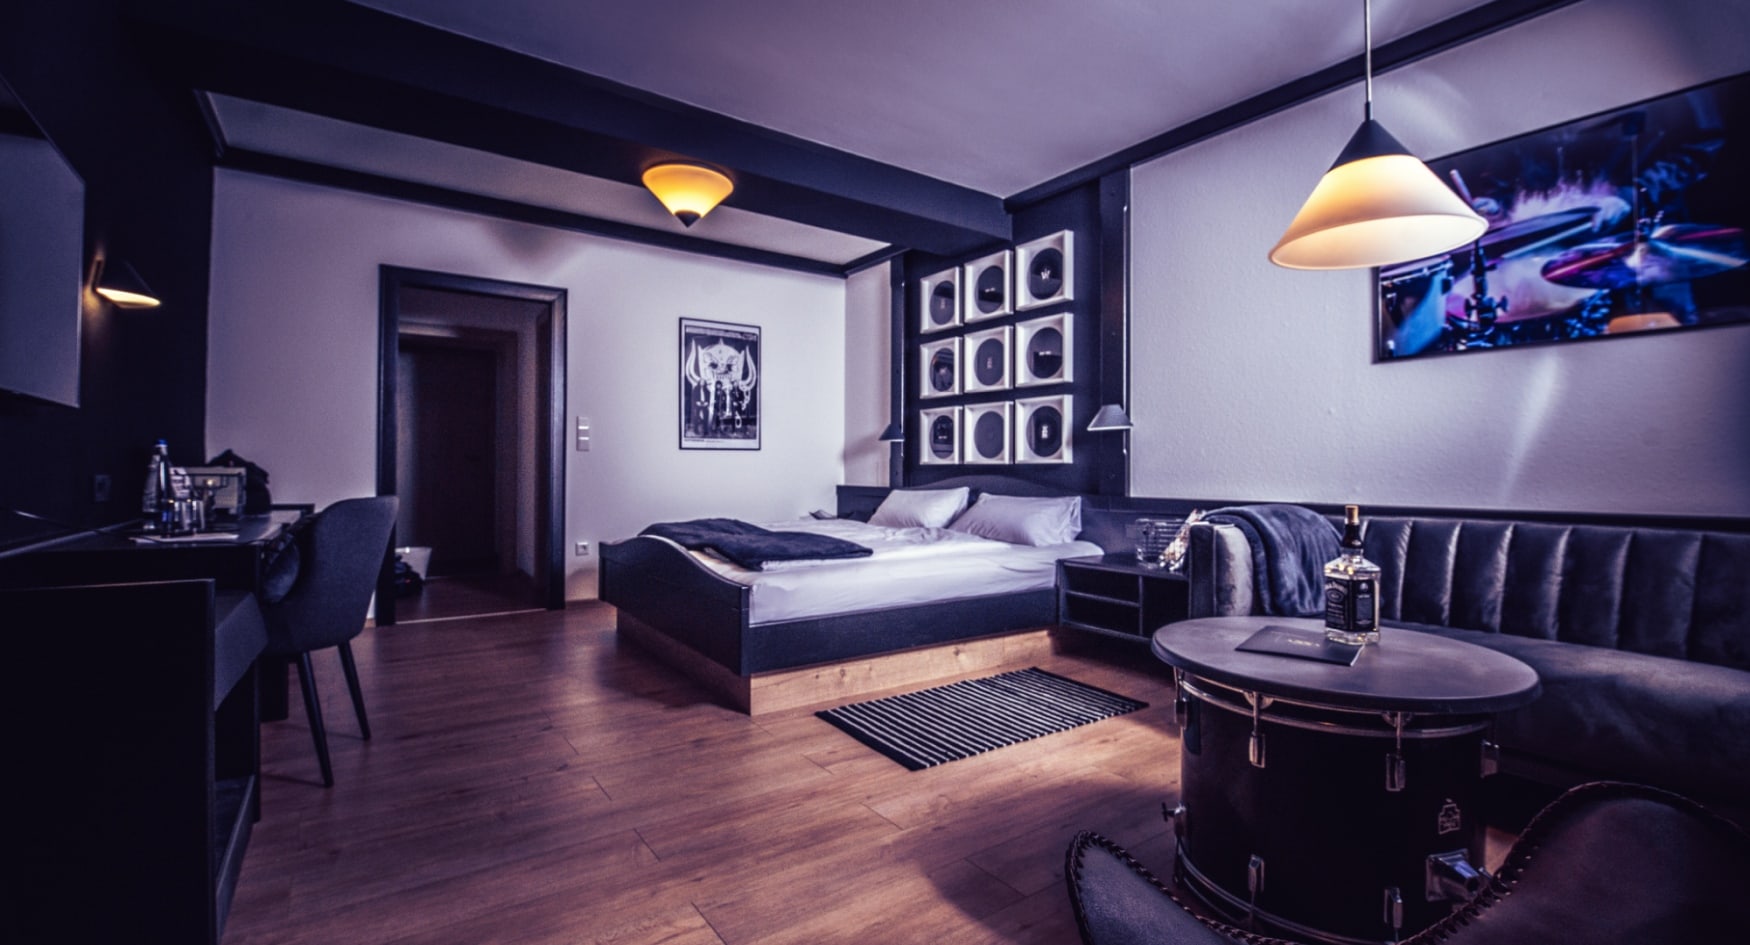 Hotelzimmer mit besonderem Dekor, Schallplatten an der Wand und einer Bassdrum als Beistelltisch